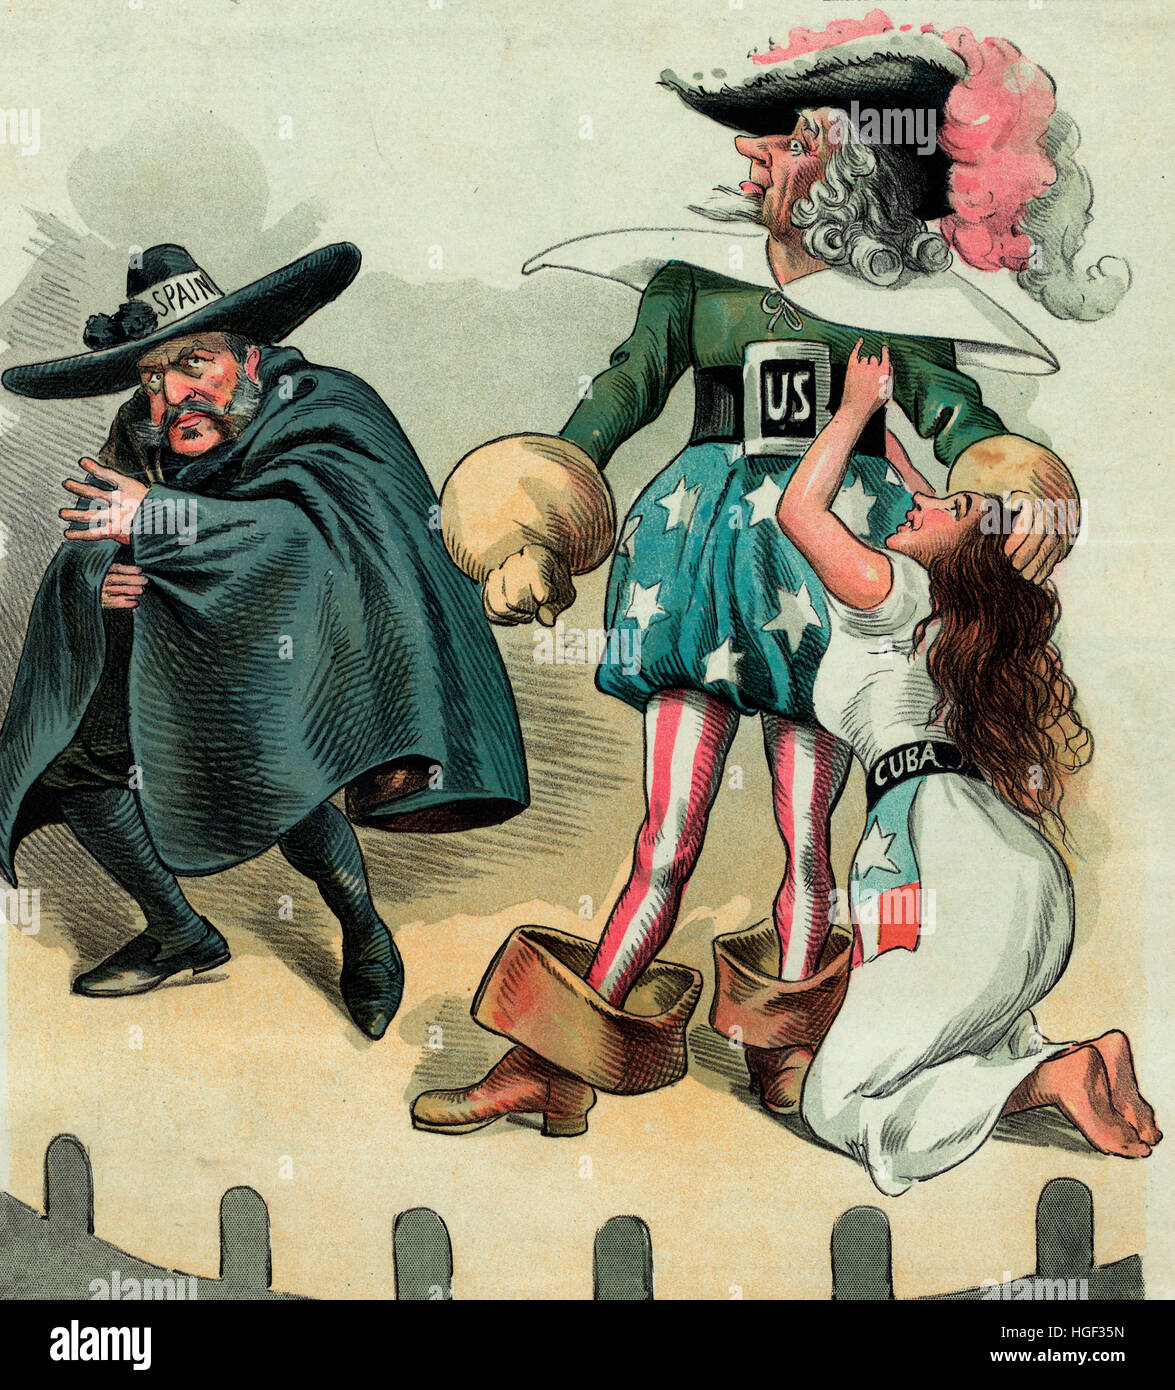 El melodrama cubano- caricatura política muestra el Tío Sam en el papel de 'héroe noble' en un melodrama, defendiendo una joven denominada "Cuba" desde el "gran villano" con la etiqueta 'Spain'. 1896 Foto de stock